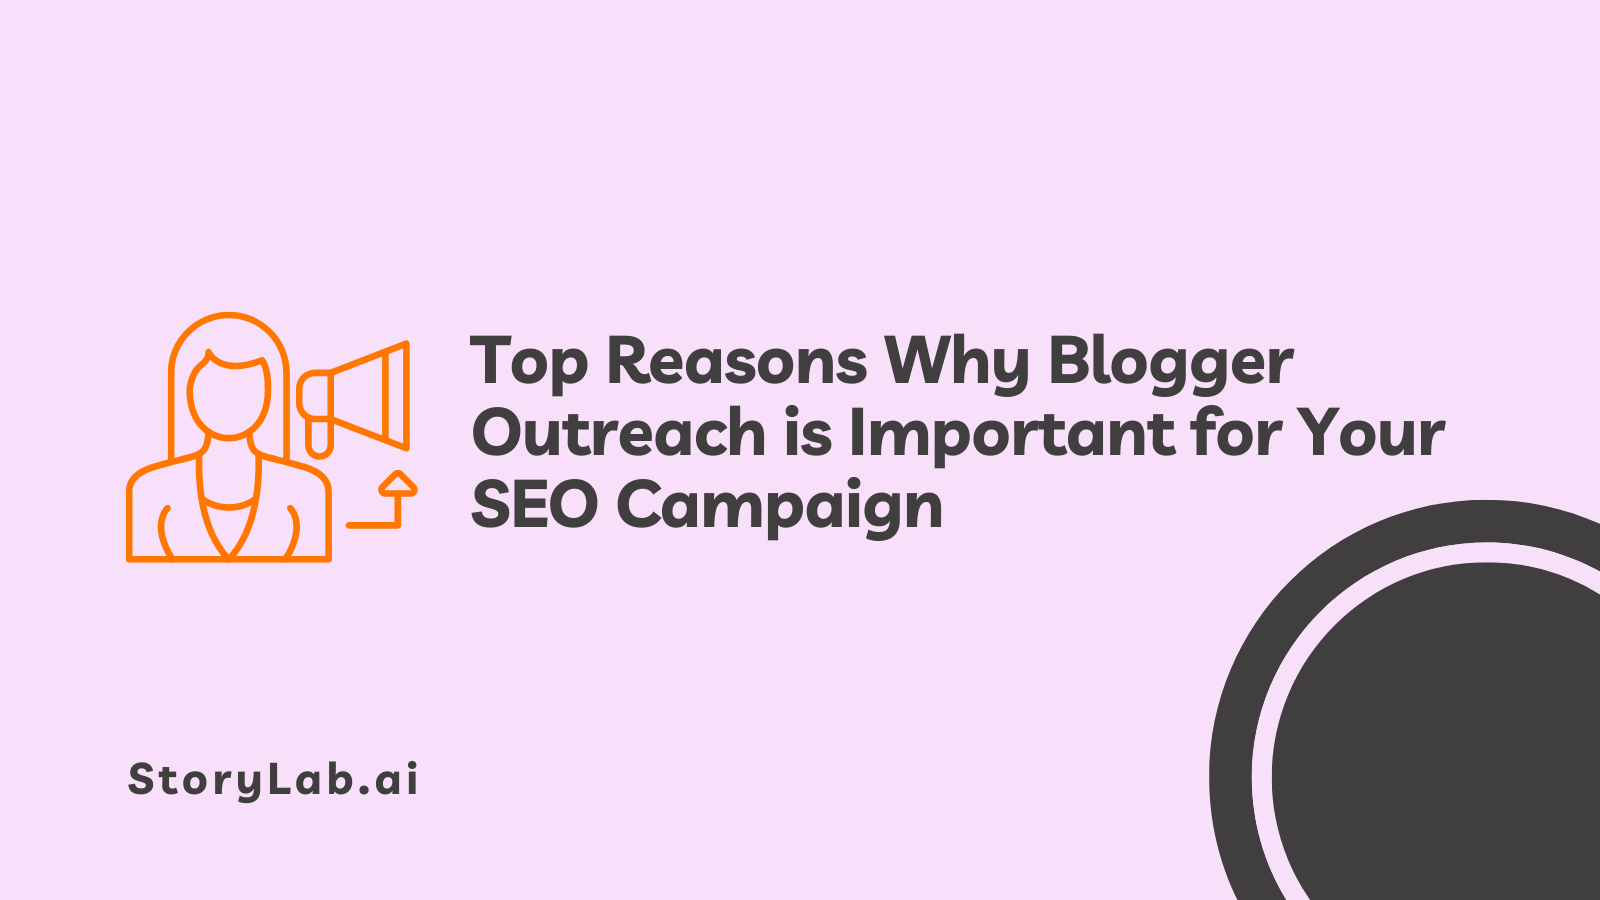 Principali motivi per cui la visibilità di Blogger è importante per la tua campagna SEO